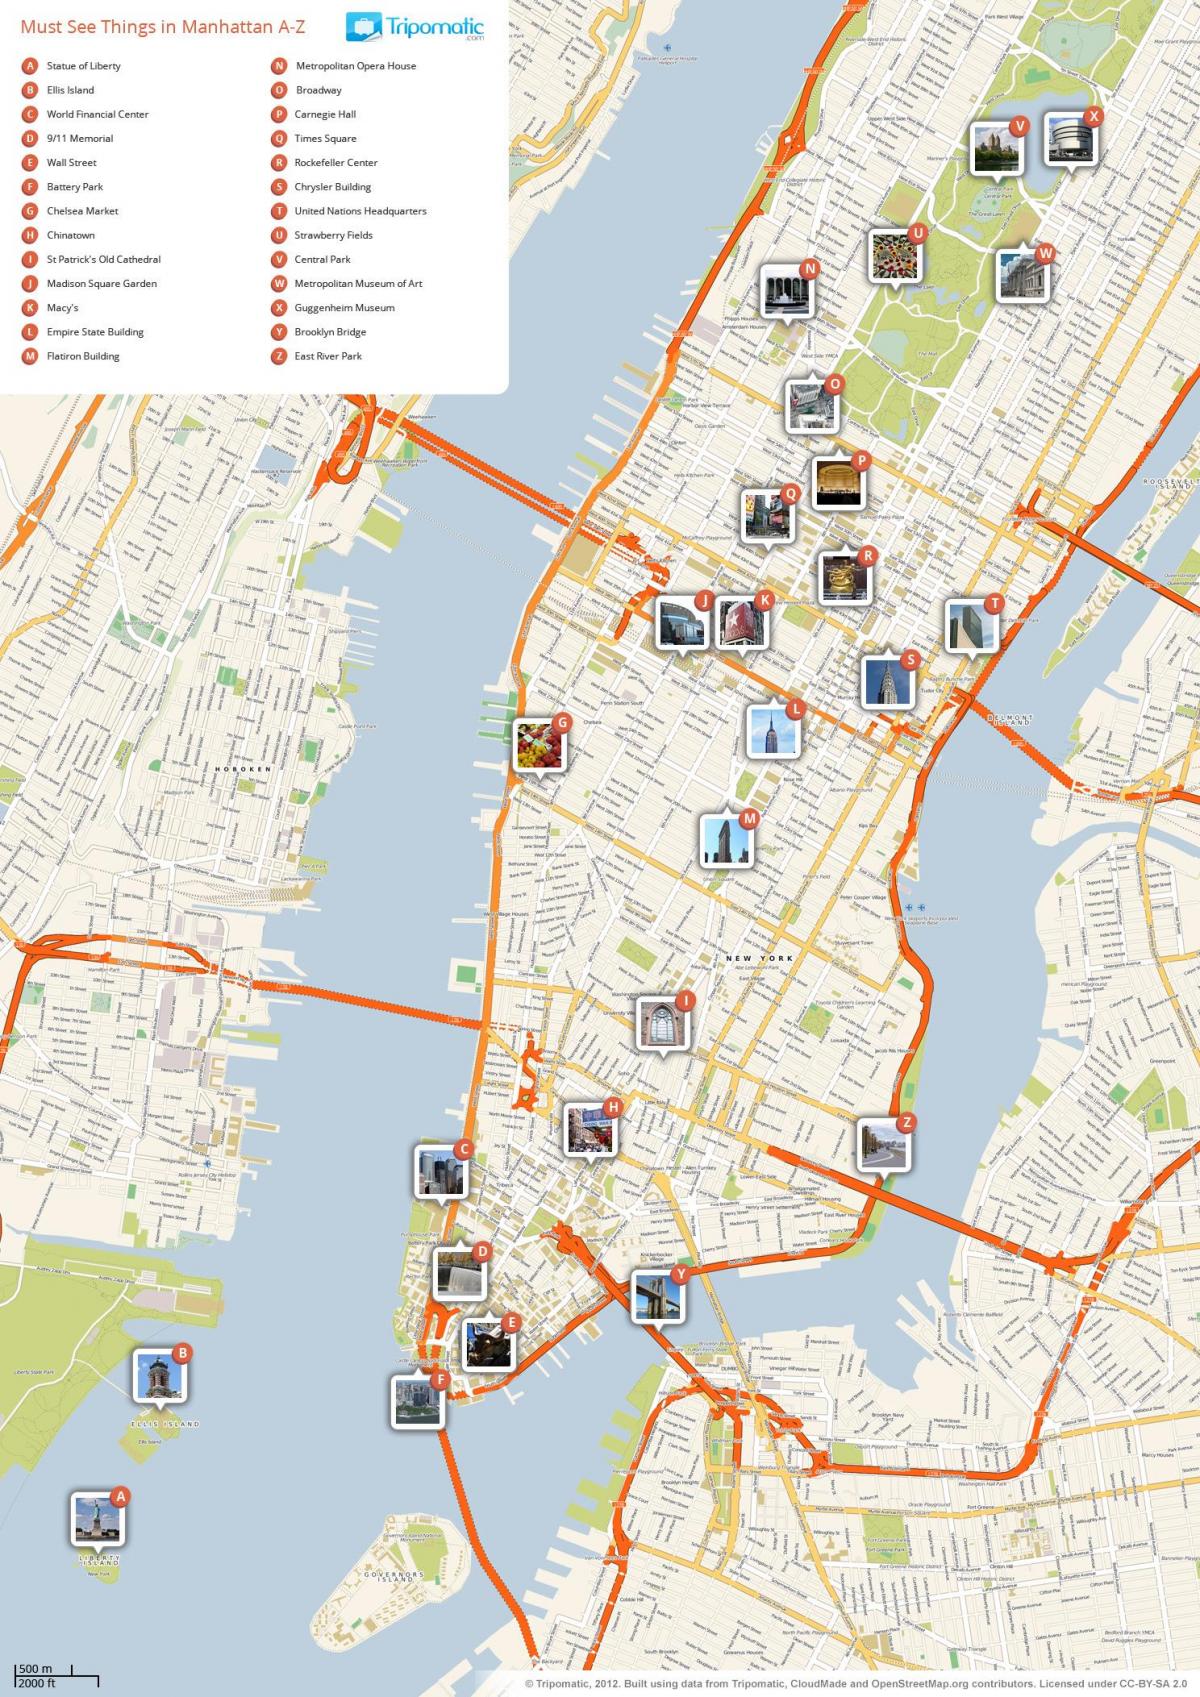 kort over Manhattan, der viser turistattraktioner